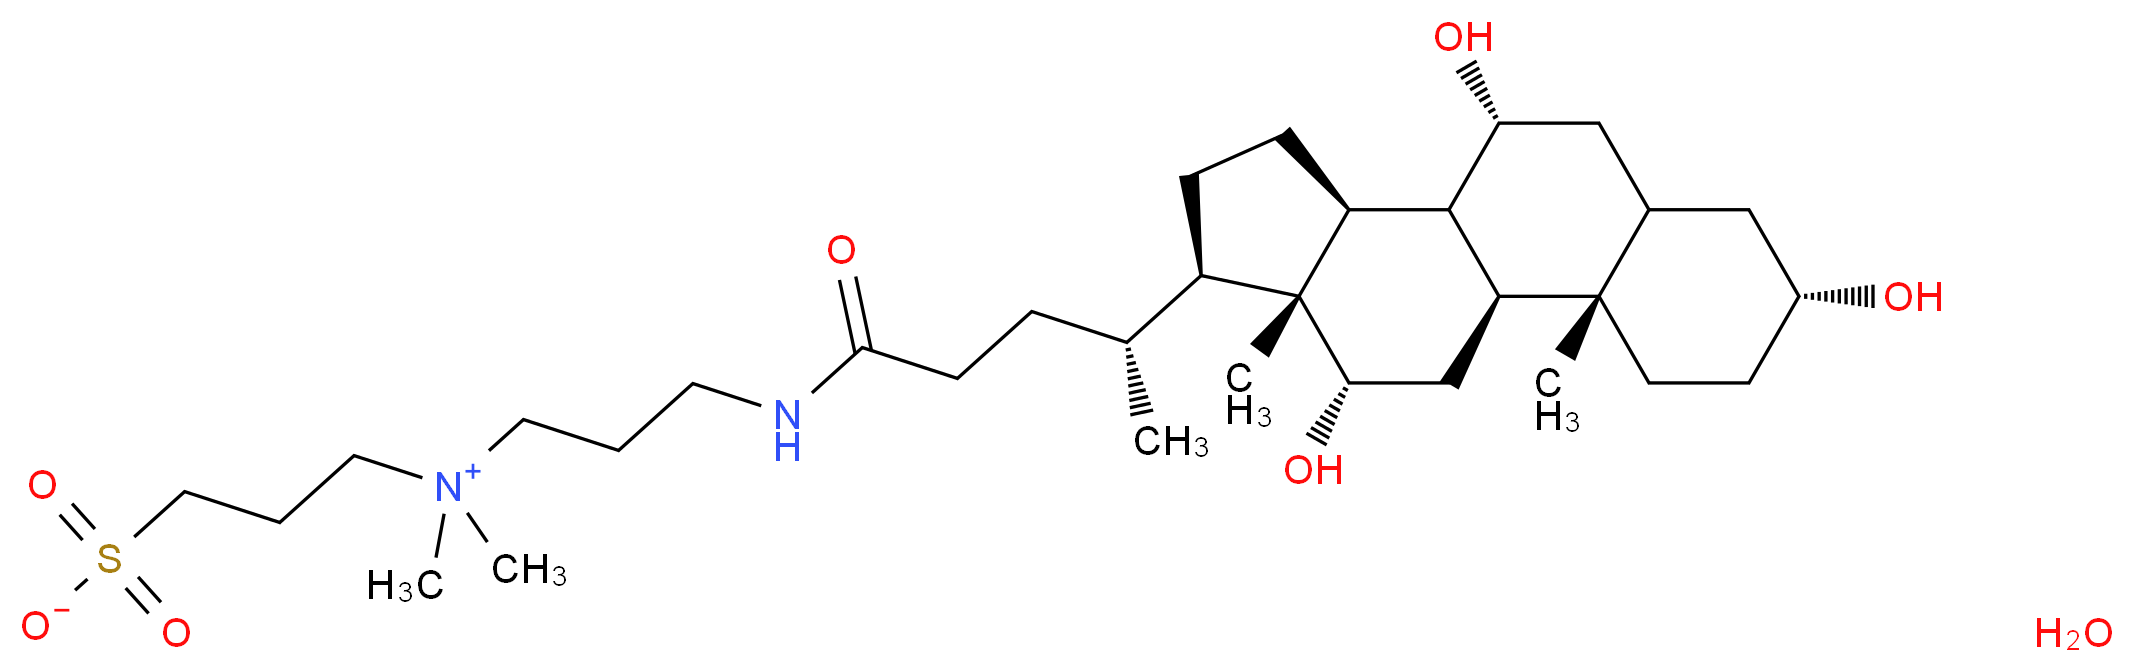 331717-45-4 molecular structure